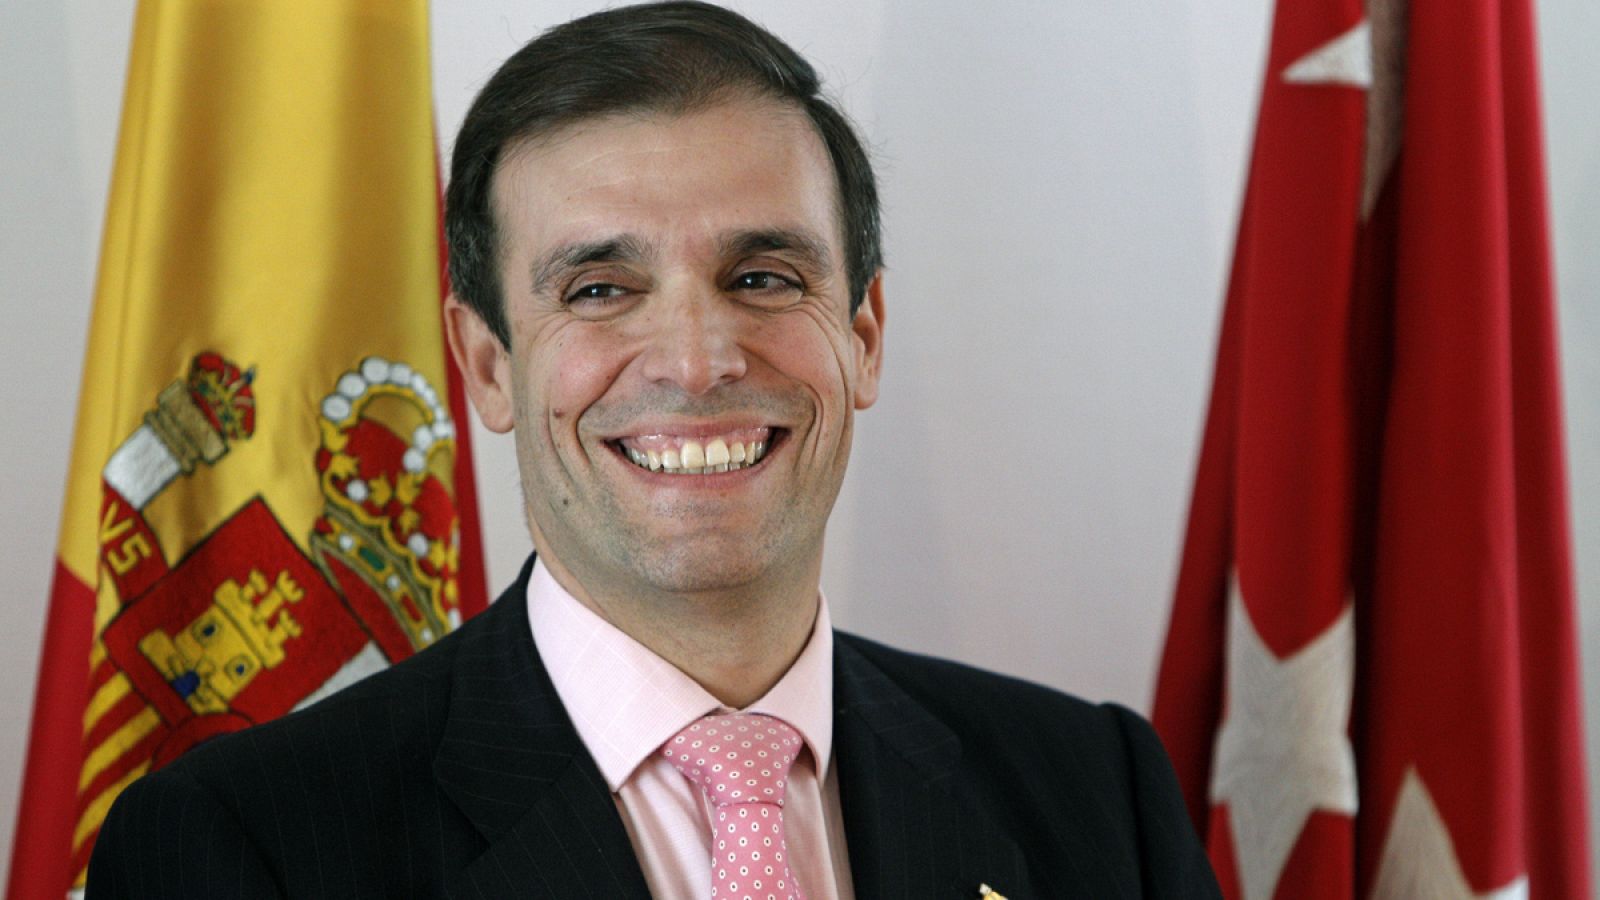 El presidente de la Cámara de Cuentas de la Comunidad de Madrid, Arturo Canalda, en una fotografía de 2011